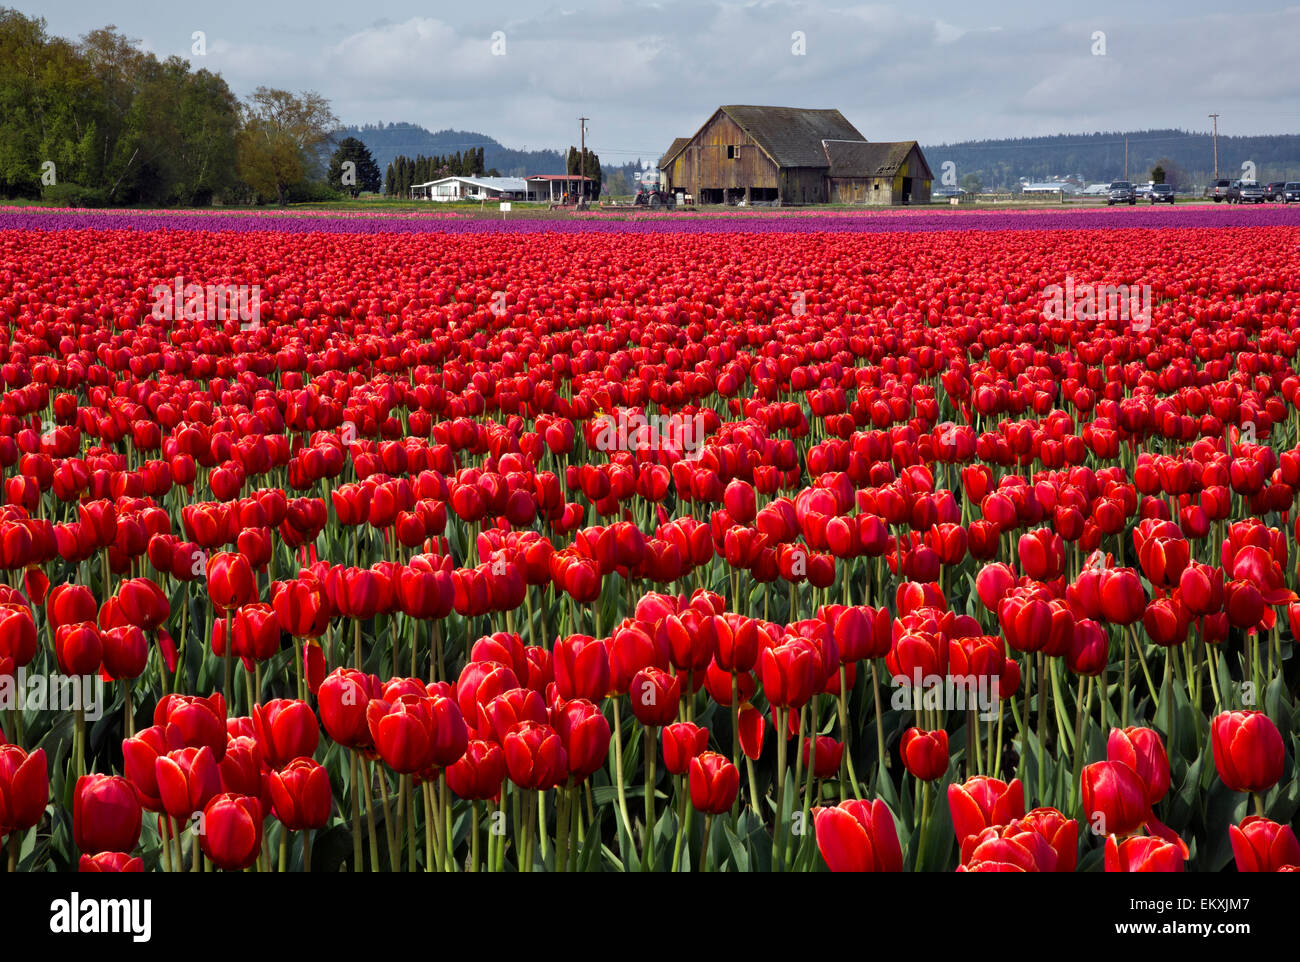 WA10242-00...WASHINGTON - campo comercial de tulipanes cultivados por la lámpara RoozenGaarde finca en el Valle Skagit. Foto de stock